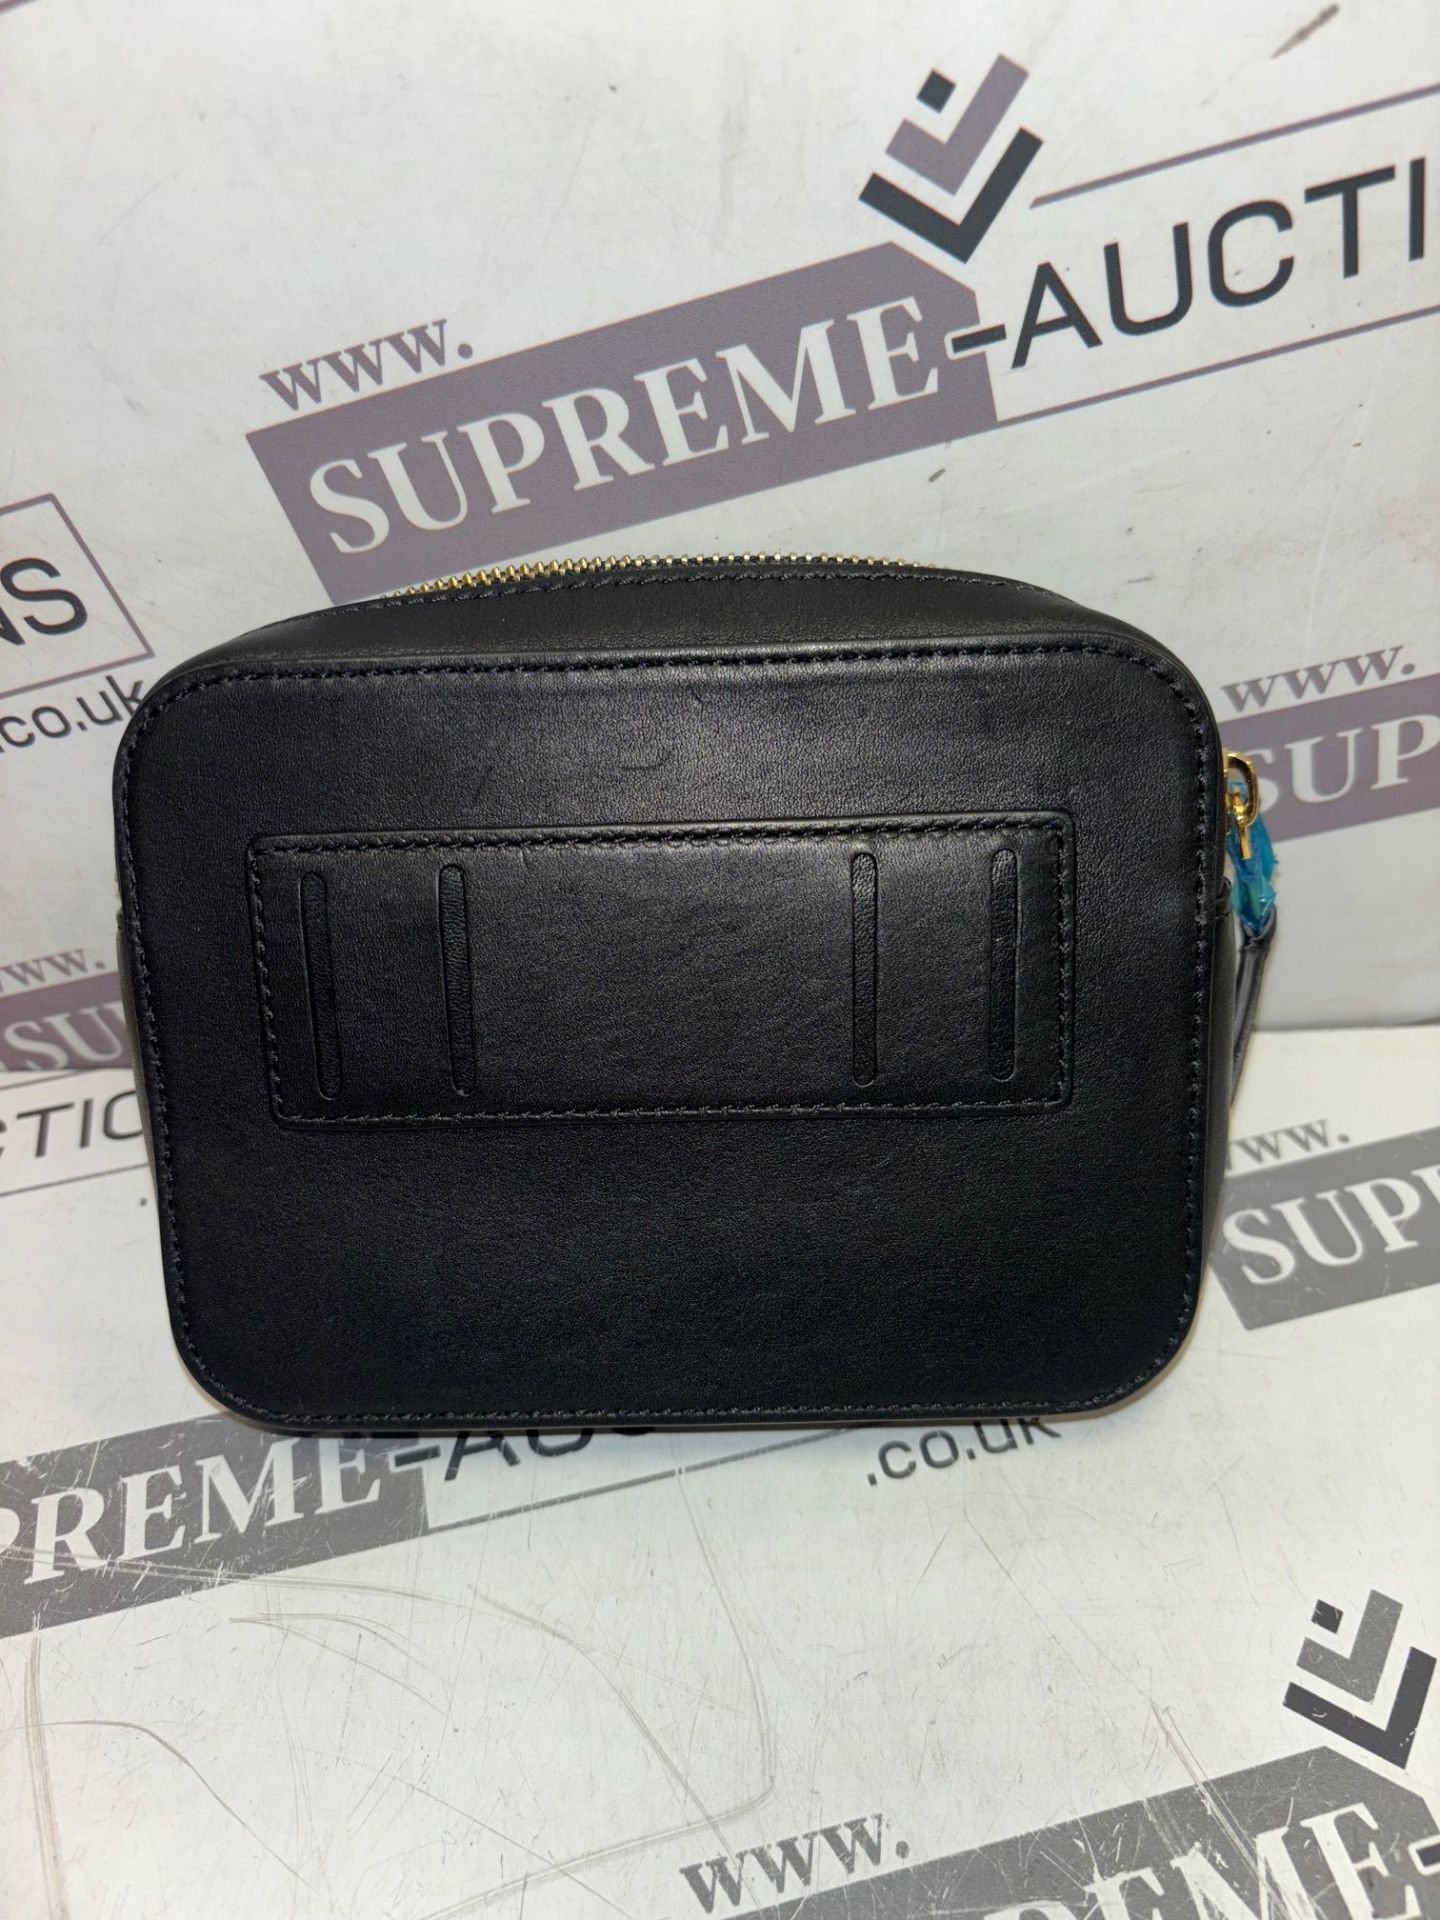 Genuine Burberry Beige/Black Nova Check Canvas and Leather Studded Elise Belt Bag Genuine - Image 4 of 5